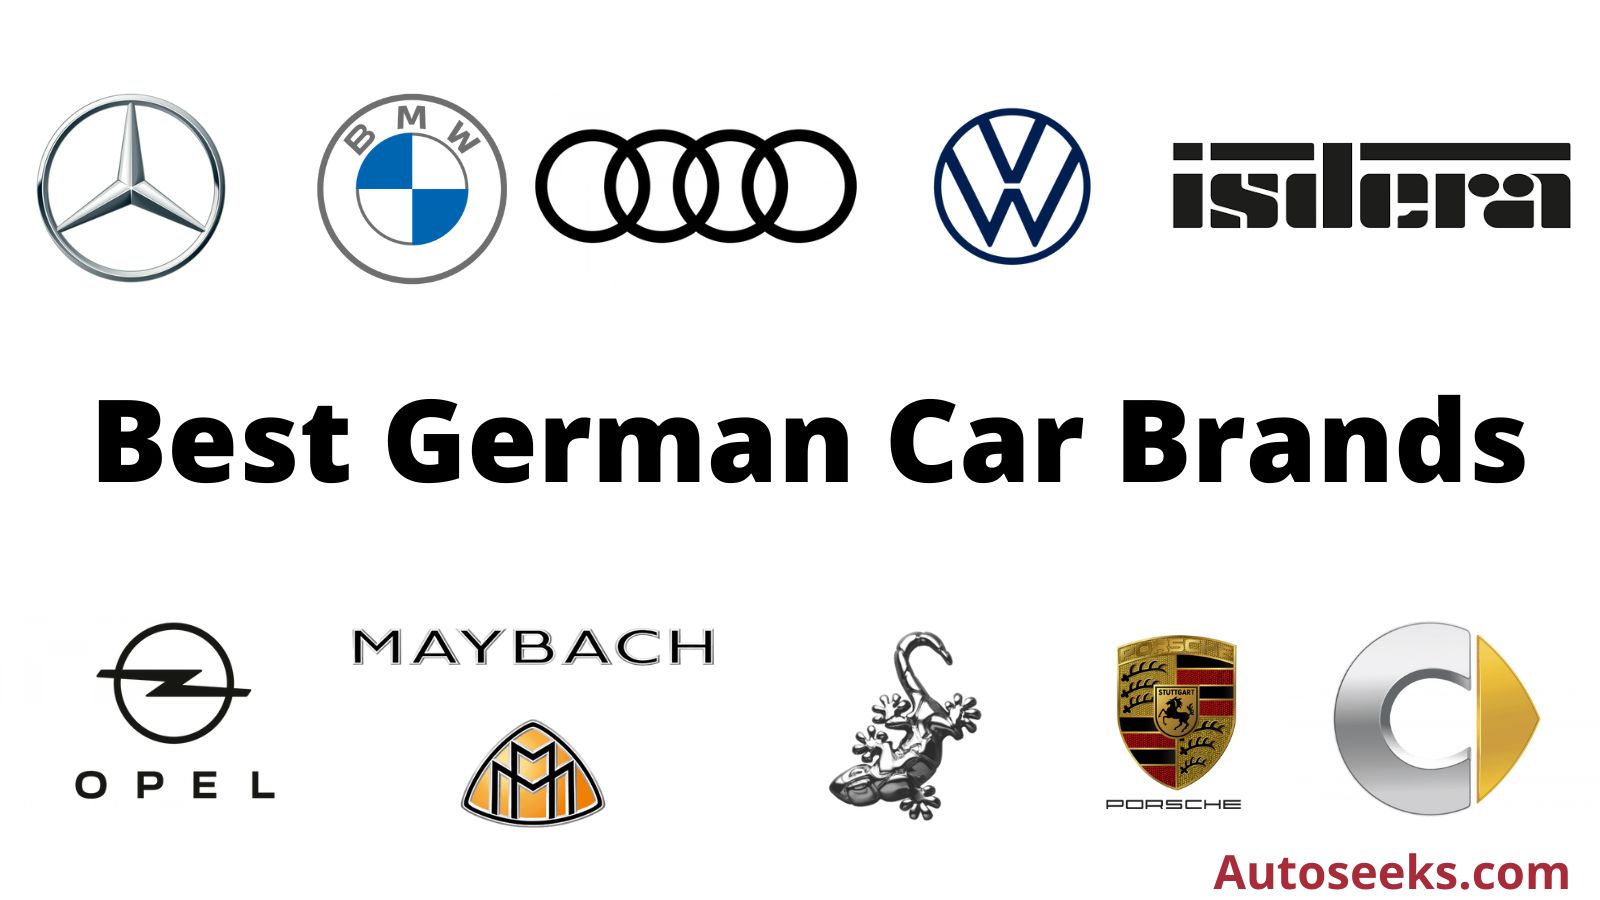 Cara germain. German car brands. German cars.